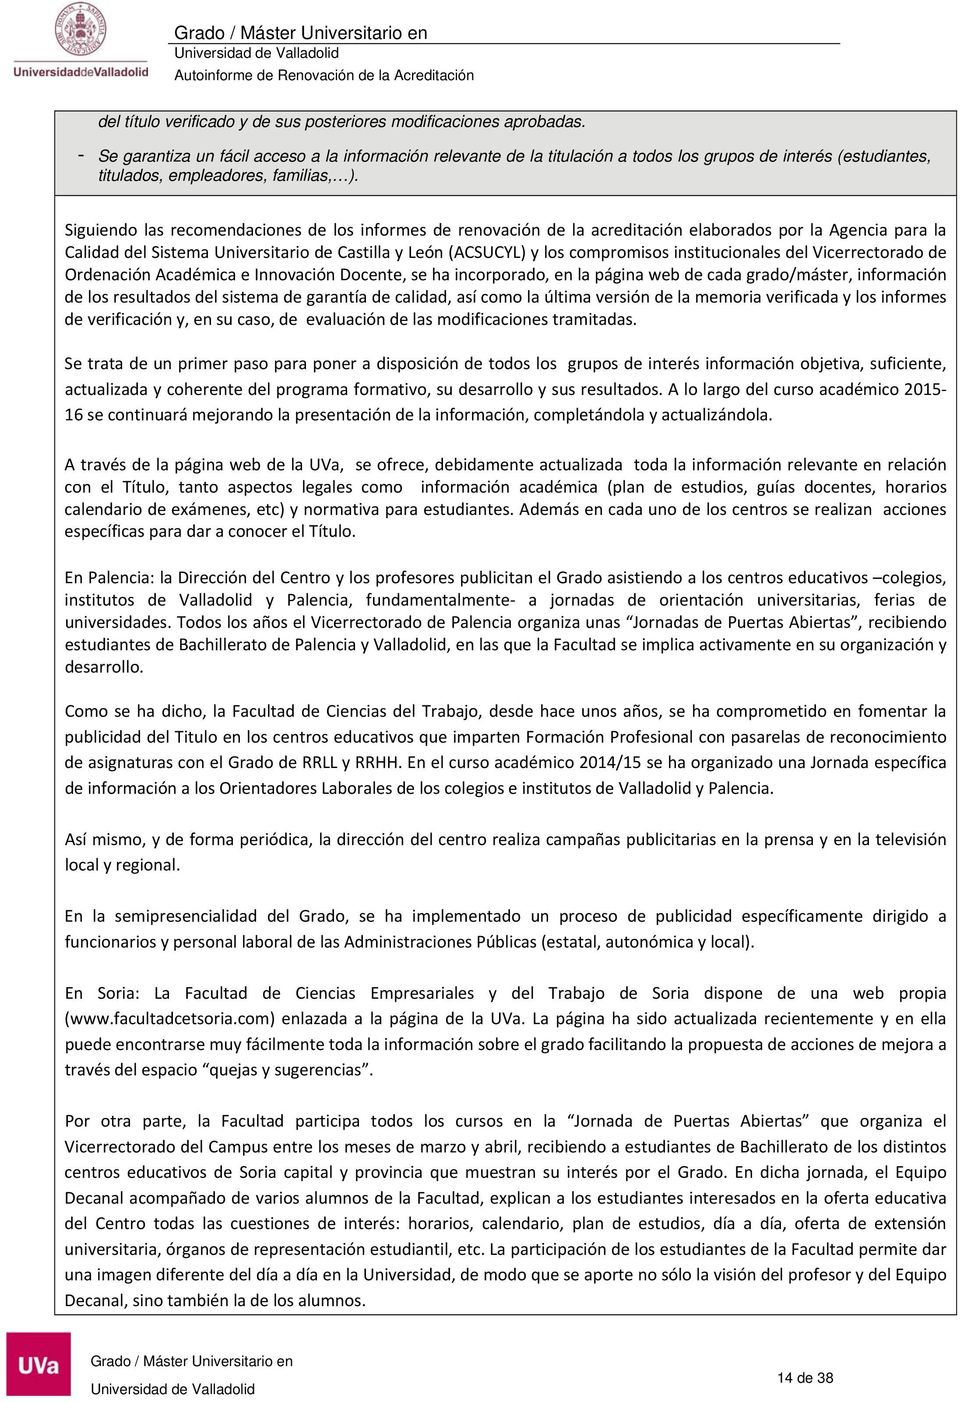 Siguiendo las recomendaciones de los informes de renovación de la acreditación elaborados por la Agencia para la Calidad del Sistema Universitario de Castilla y León (ACSUCYL) y los compromisos